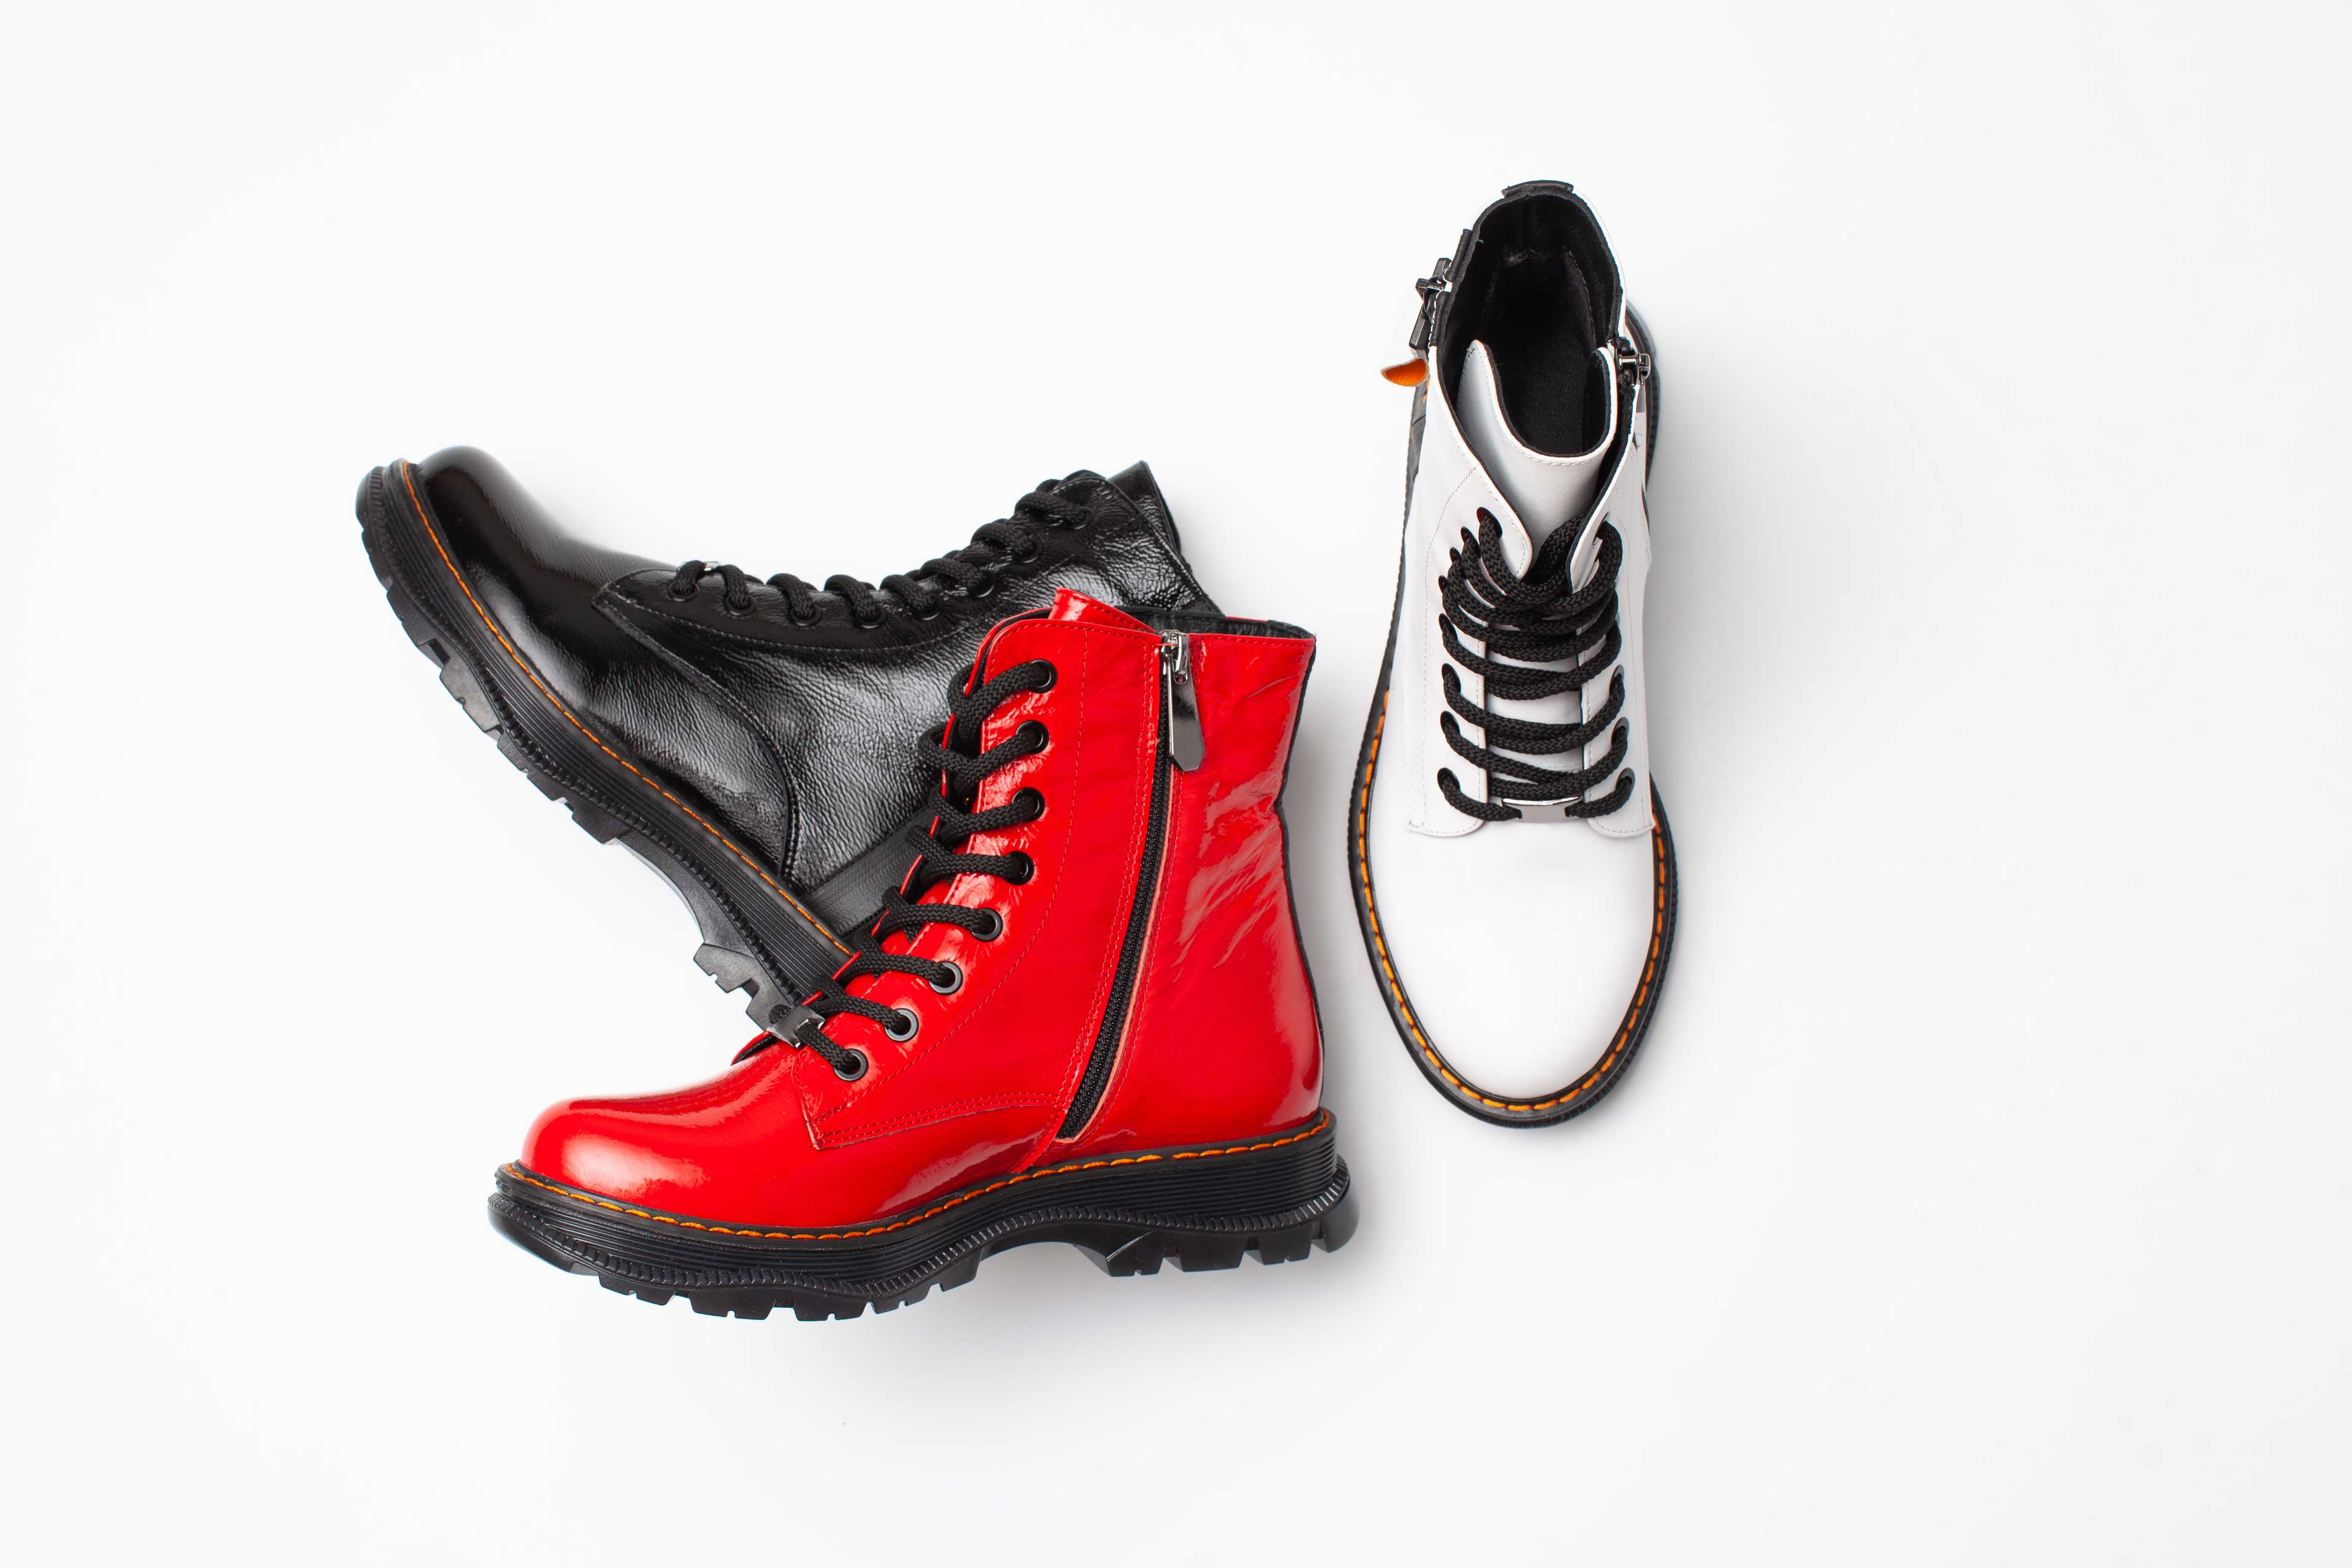 Anfibi moda 2019: gli stivali modello combat boots sono il must